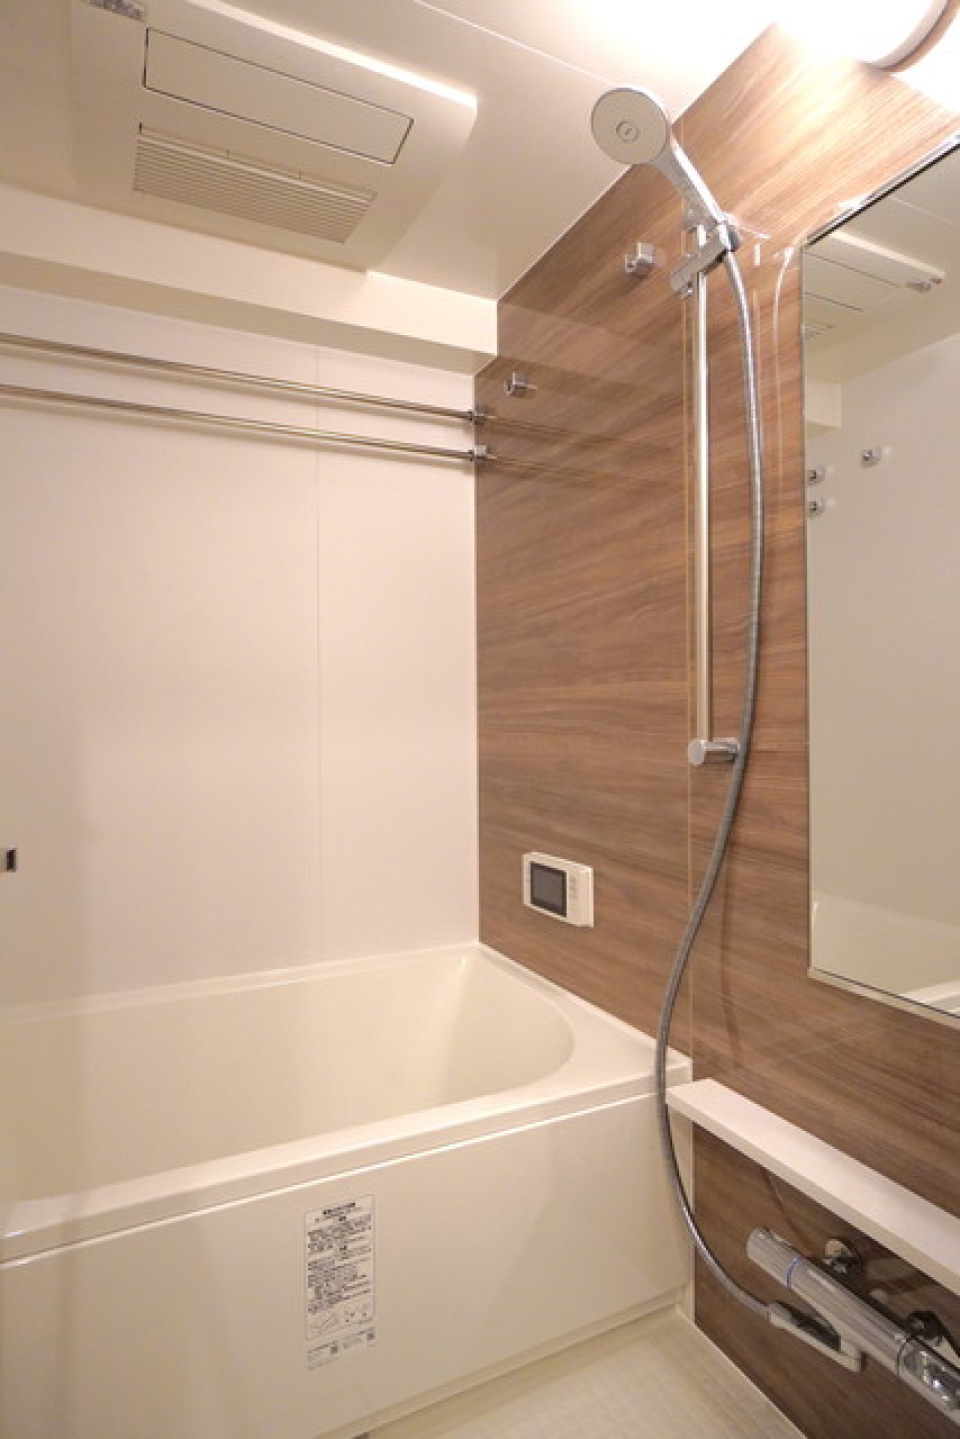 木目調のパネルが導入されている浴室です。※写真は同タイプ住戸です。